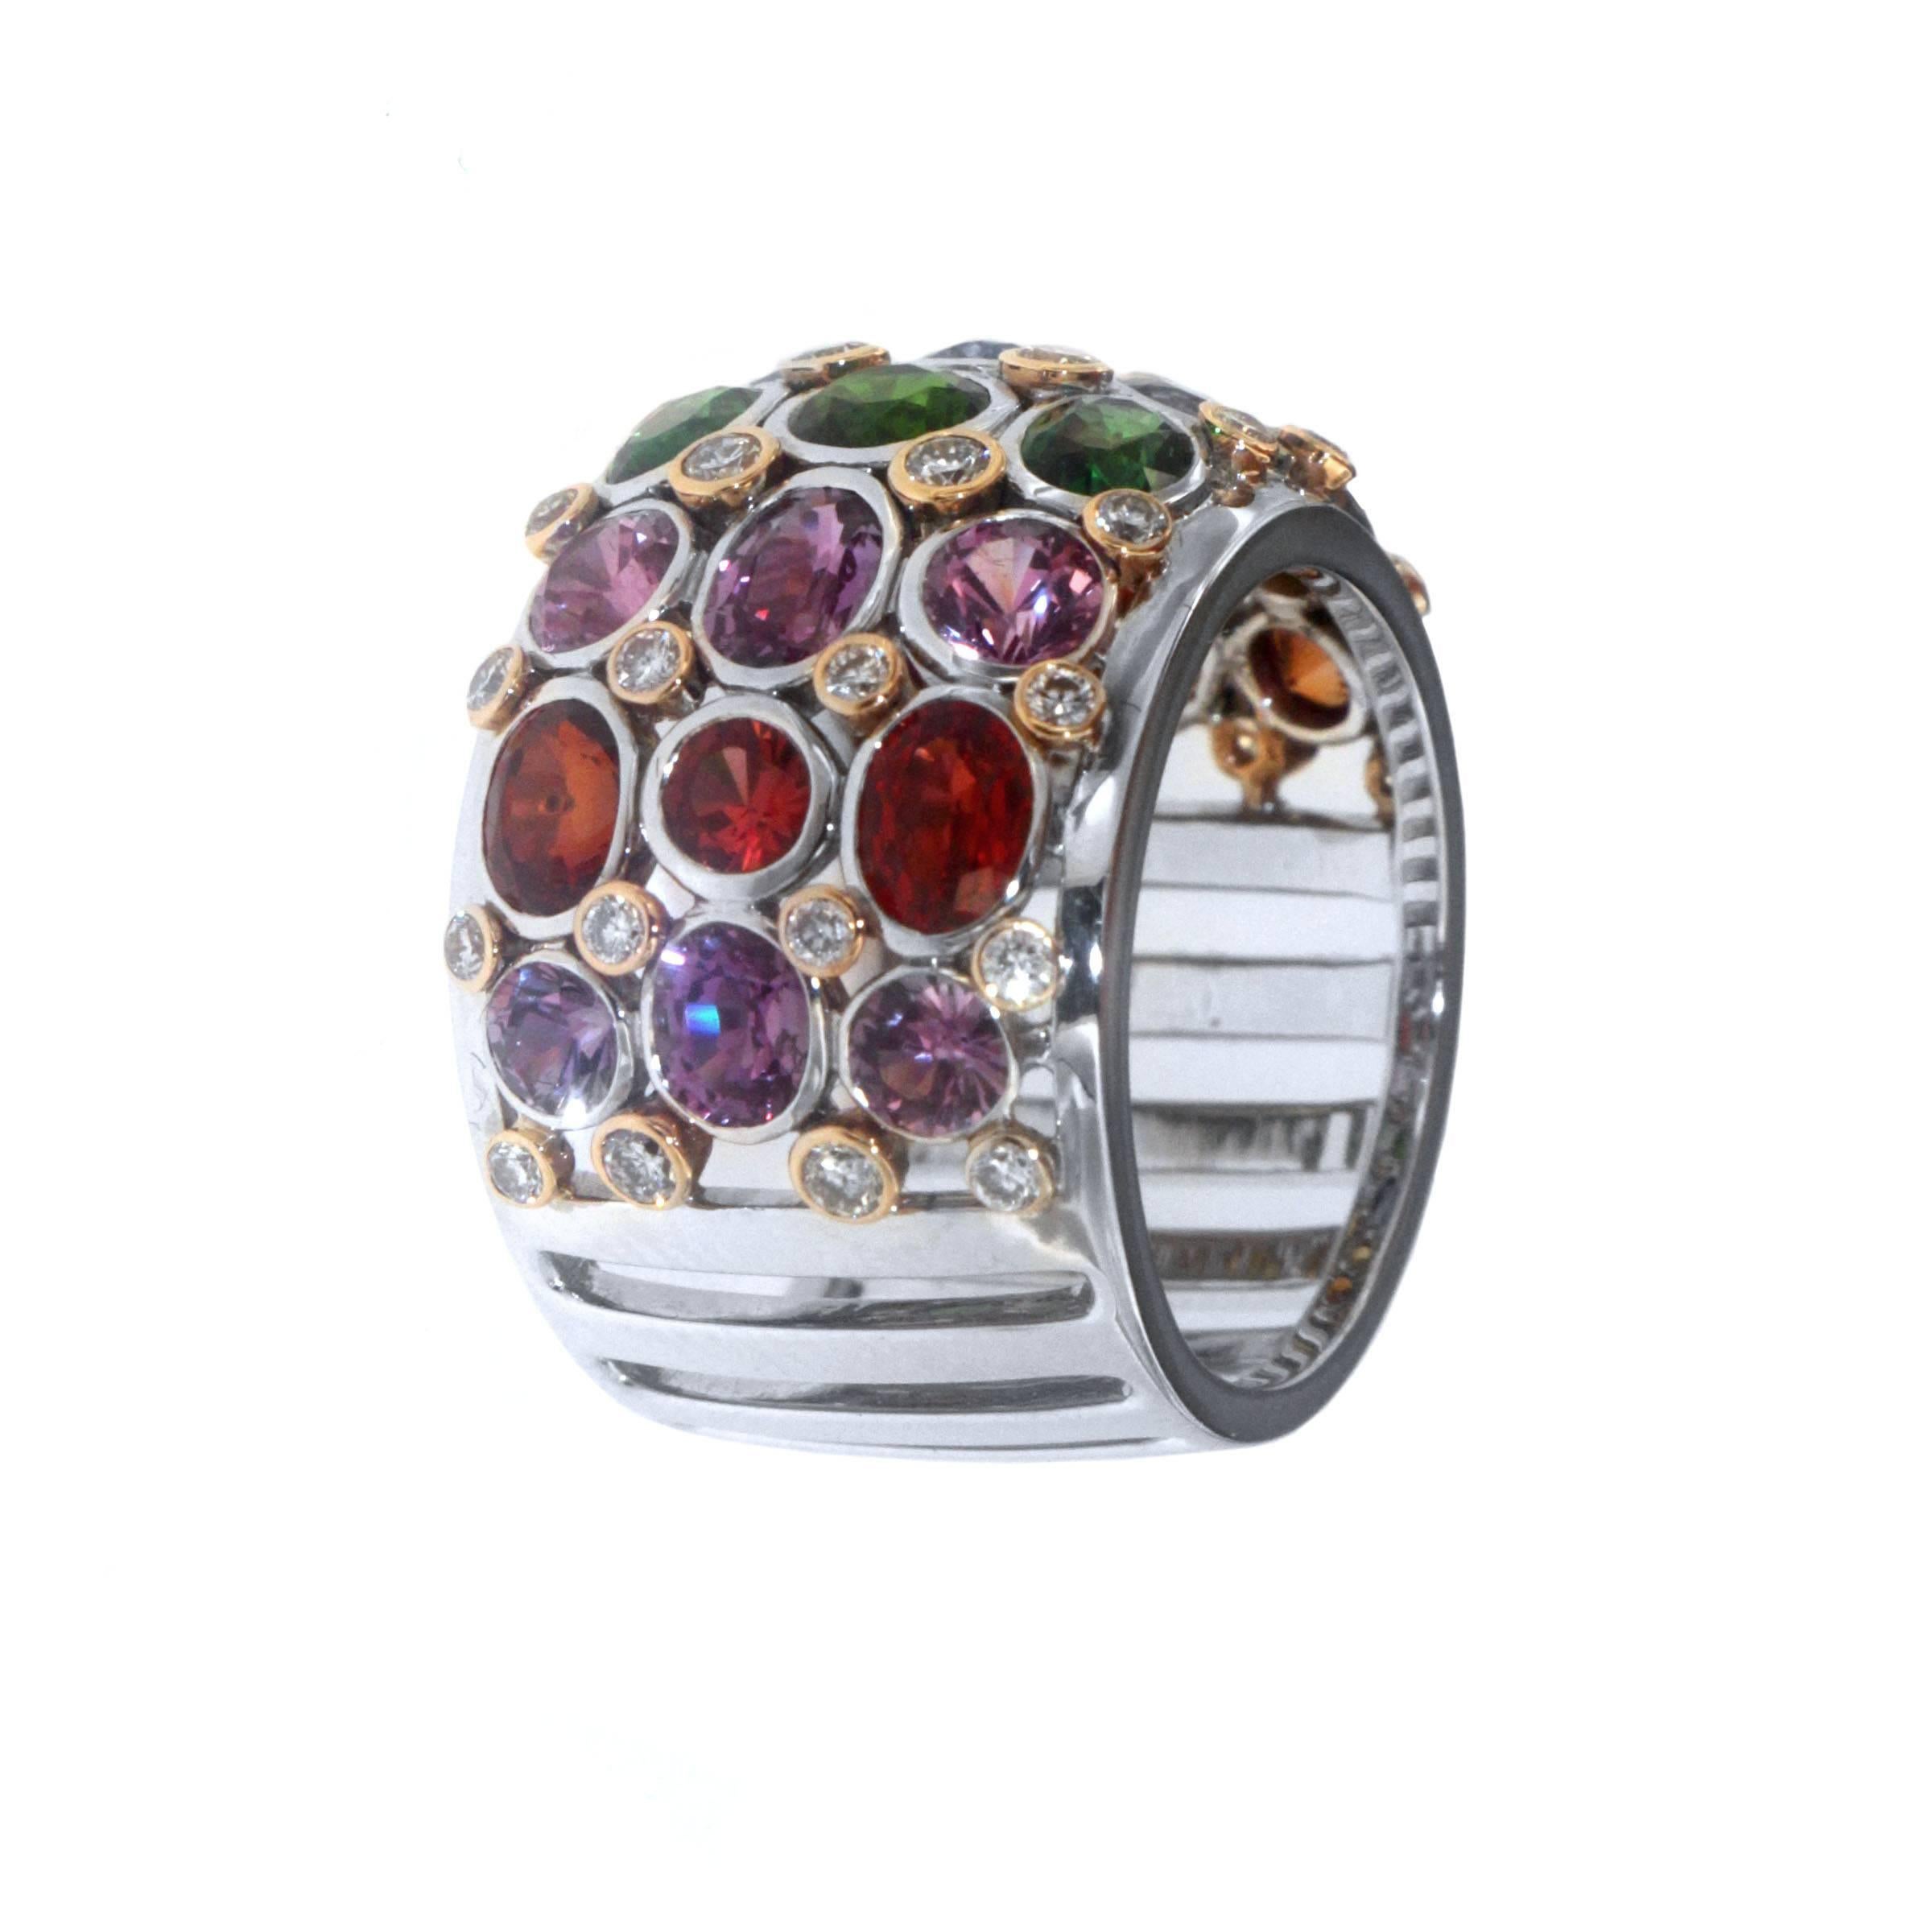 Dieser Gorgous Ring ist ein farbenfrohes, kostbares und wunderschönes Design aus dem Sortiment von Zorab Creation. Der Ring ist mit mehrfarbigen Saphiren in den Farben Orange, Gelb, Blau, Rosa, Lila und schließlich Rot mit insgesamt 5,95 Karat